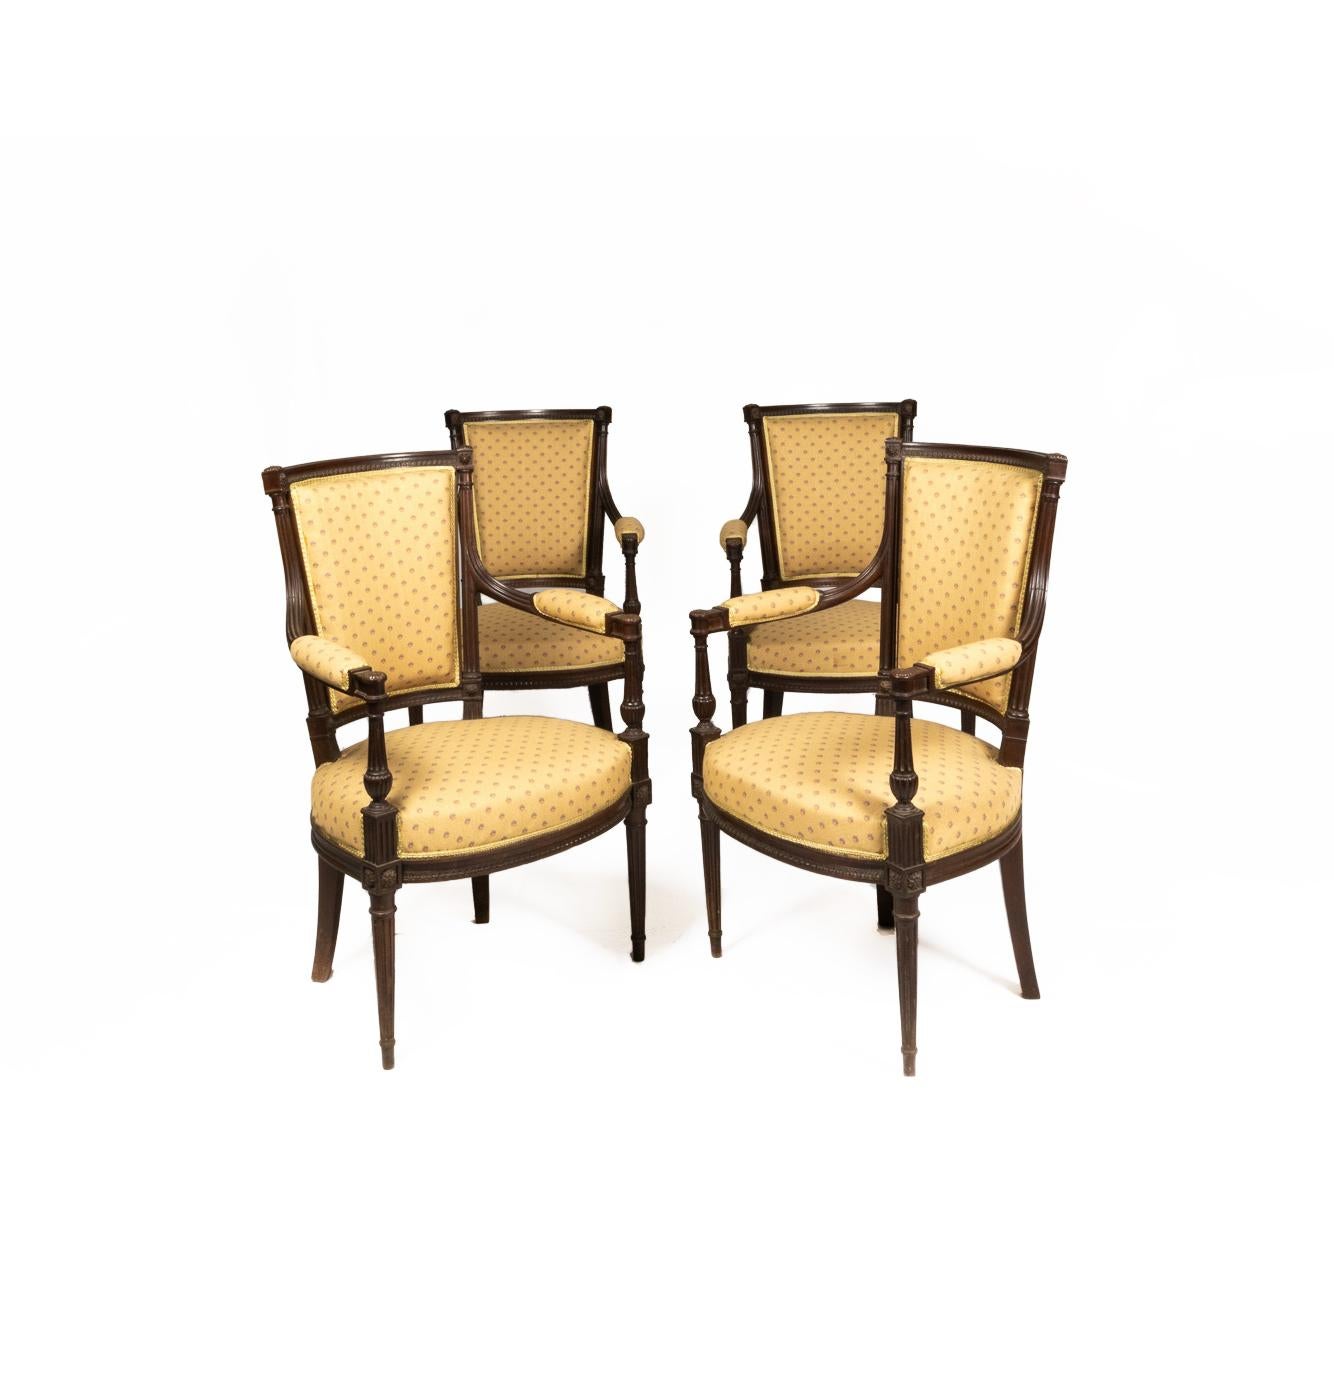 Suite de salon de style Louis XVI : Cinq pièces, quatre fauteuils et un canapé en acajou cubain sculpté dans le style 